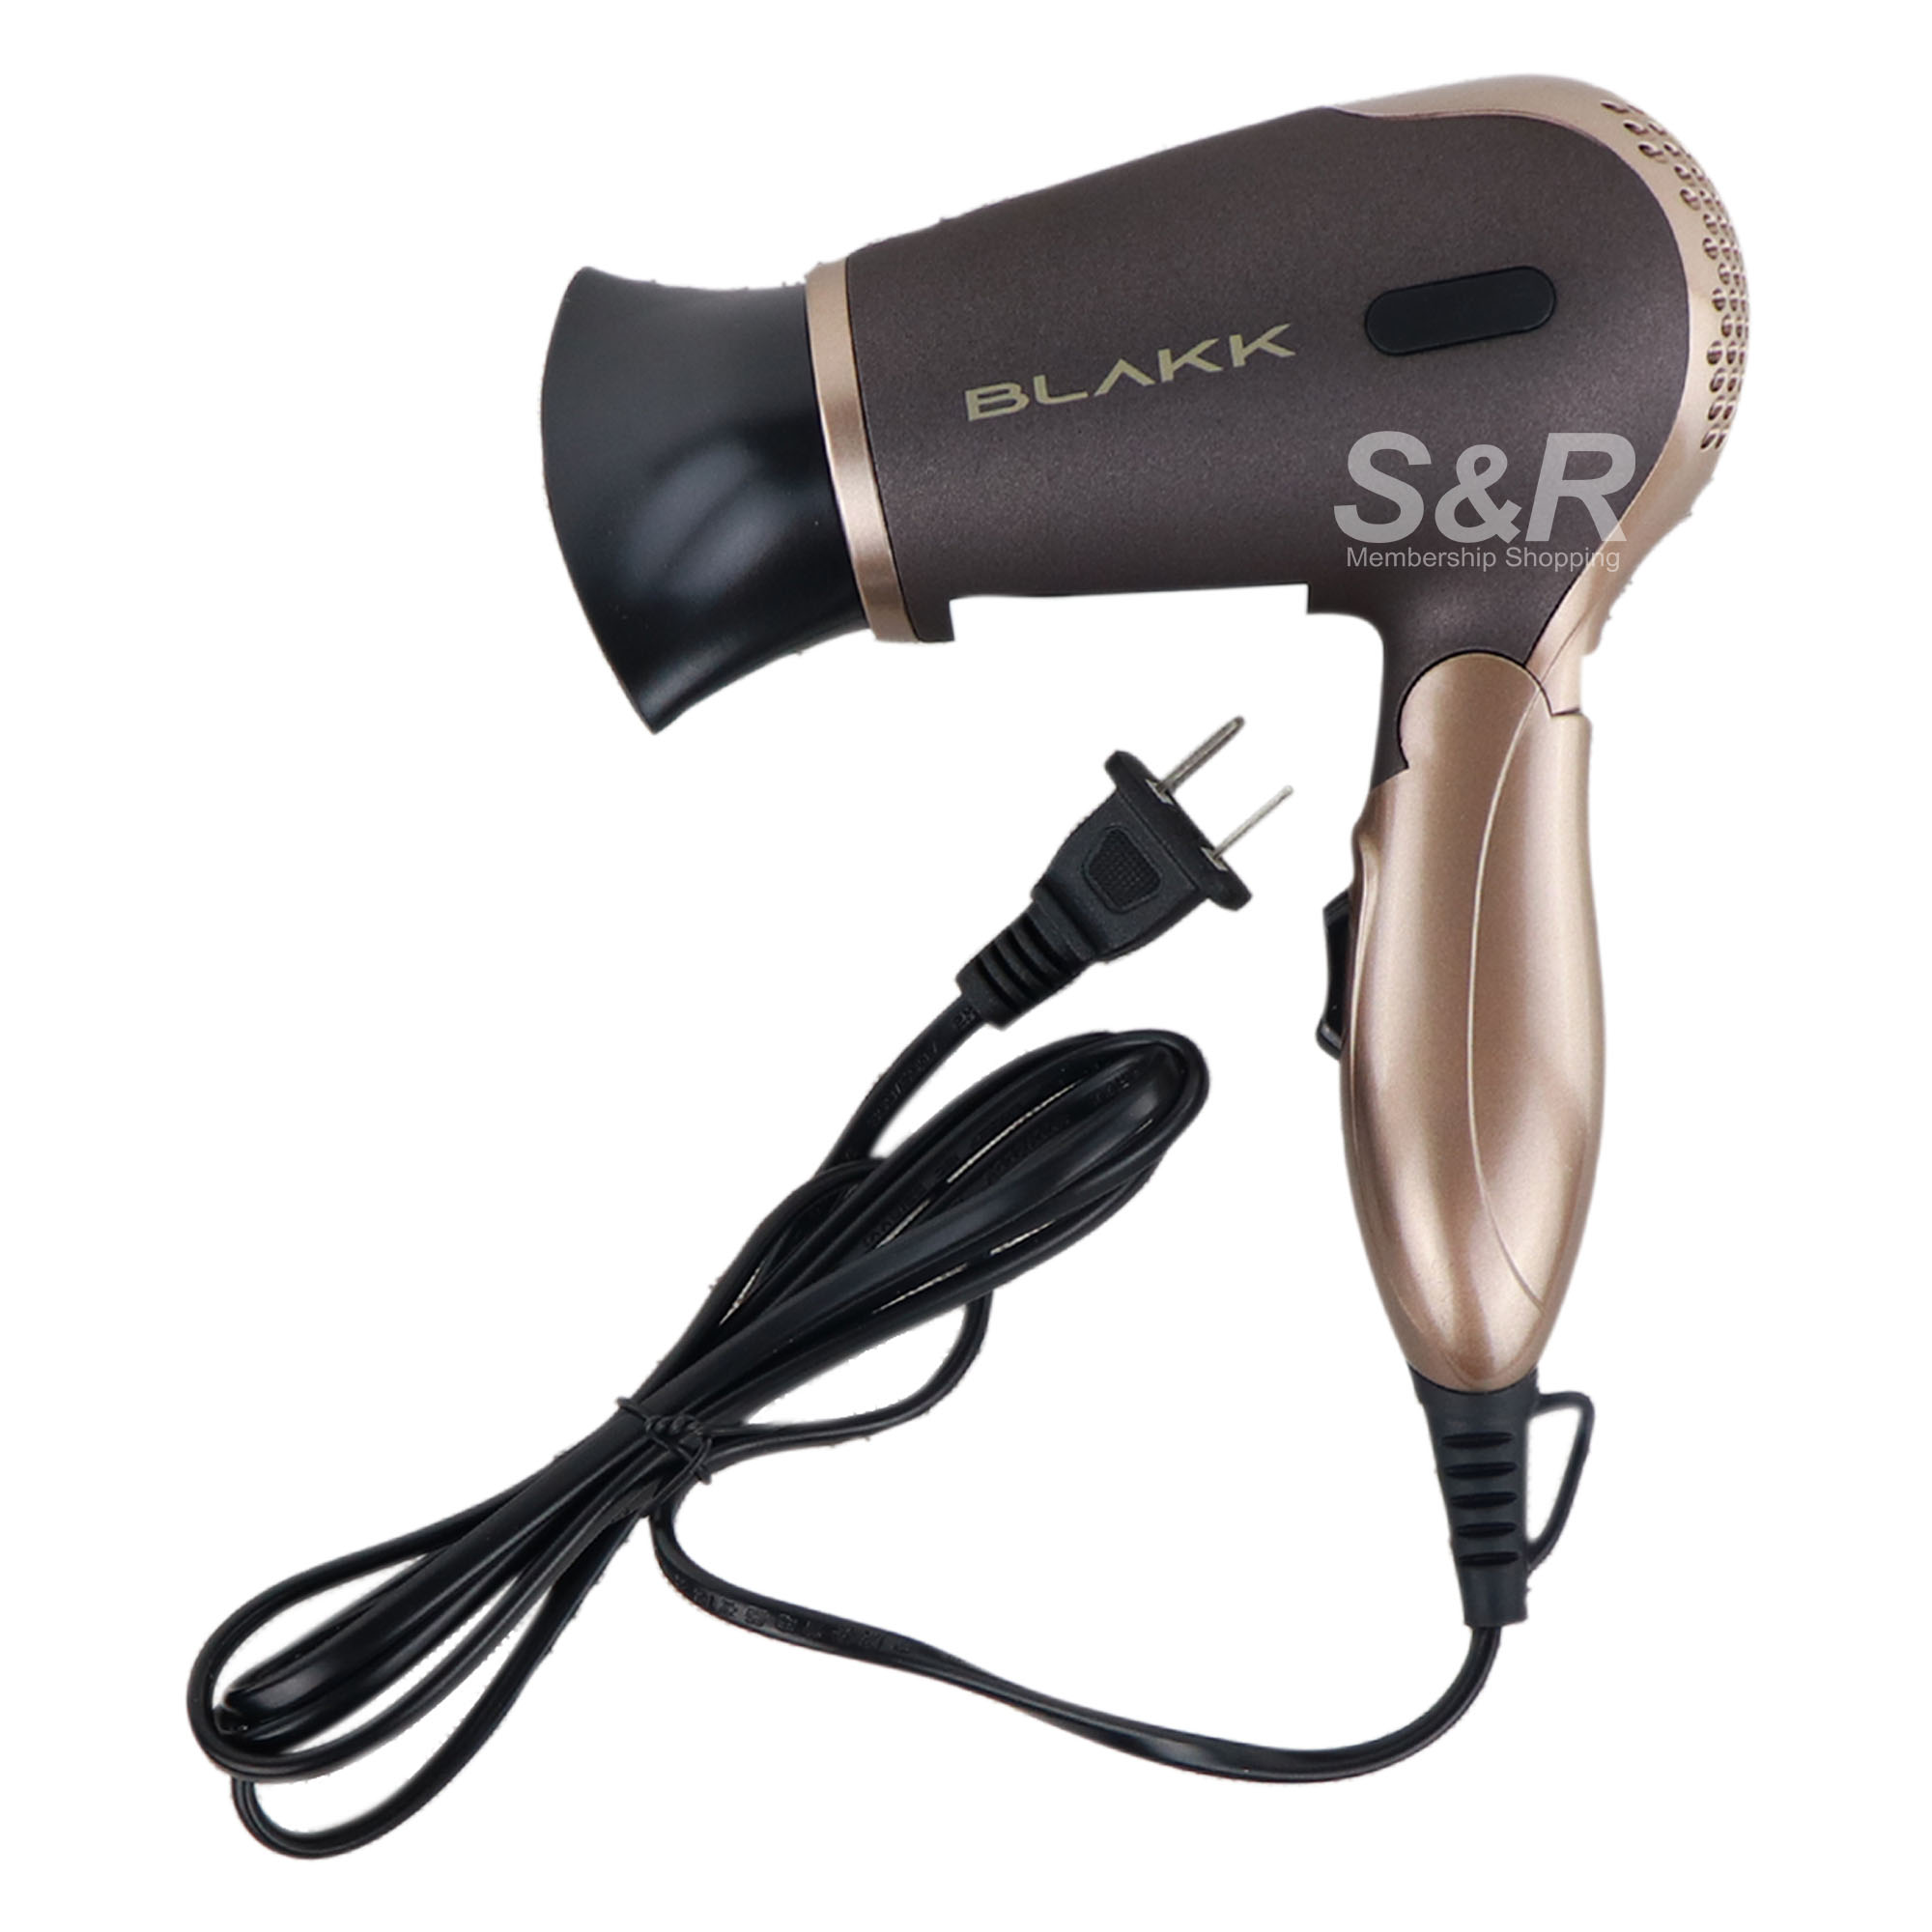 Blakk Hair Dryer Blower BOTHD212-BG